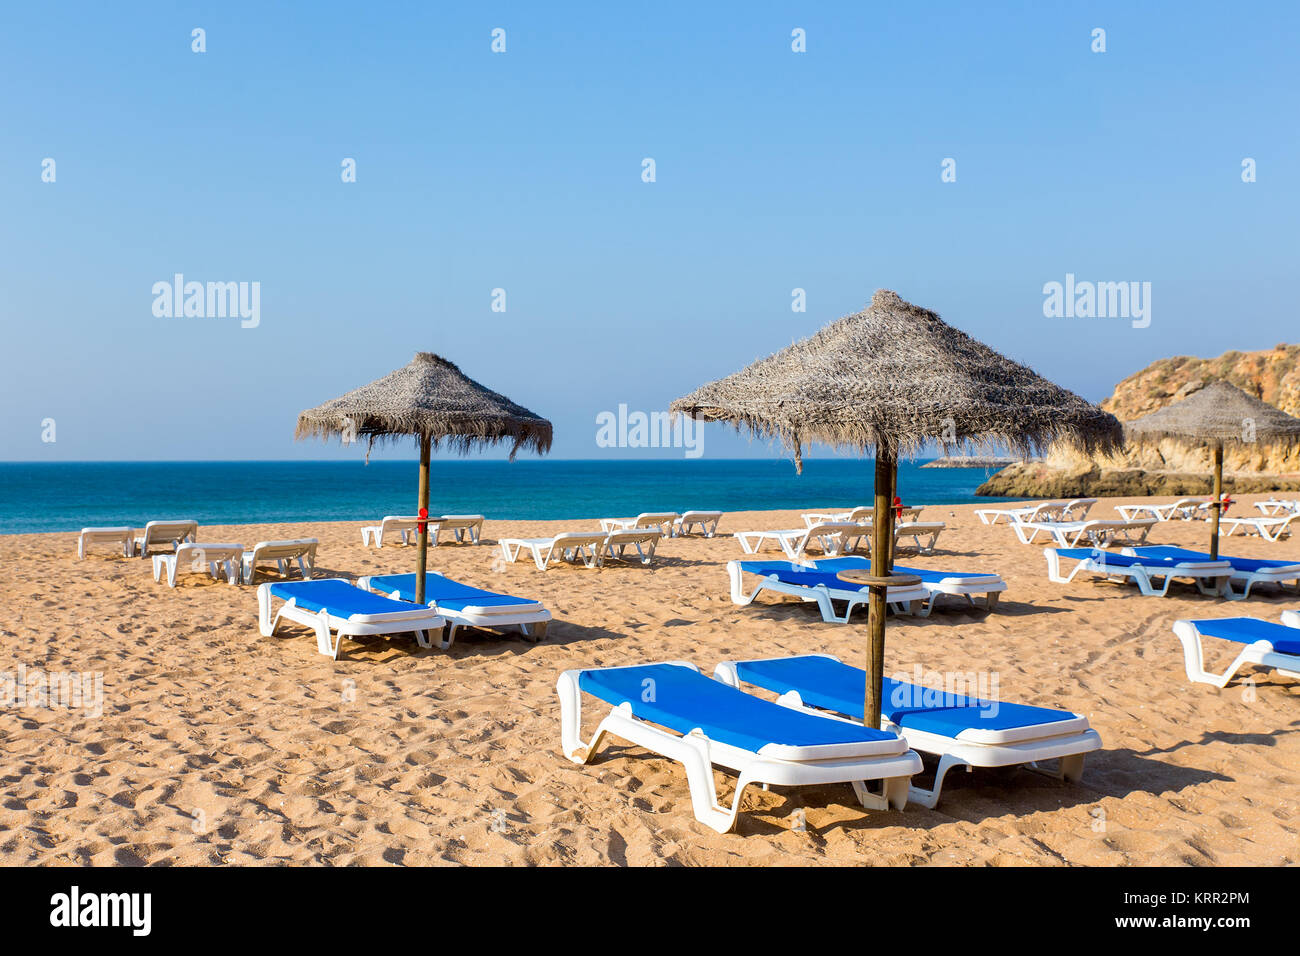 Gruppe wicker Strand Sonnenschirme und Blue Beach Betten Stockfoto